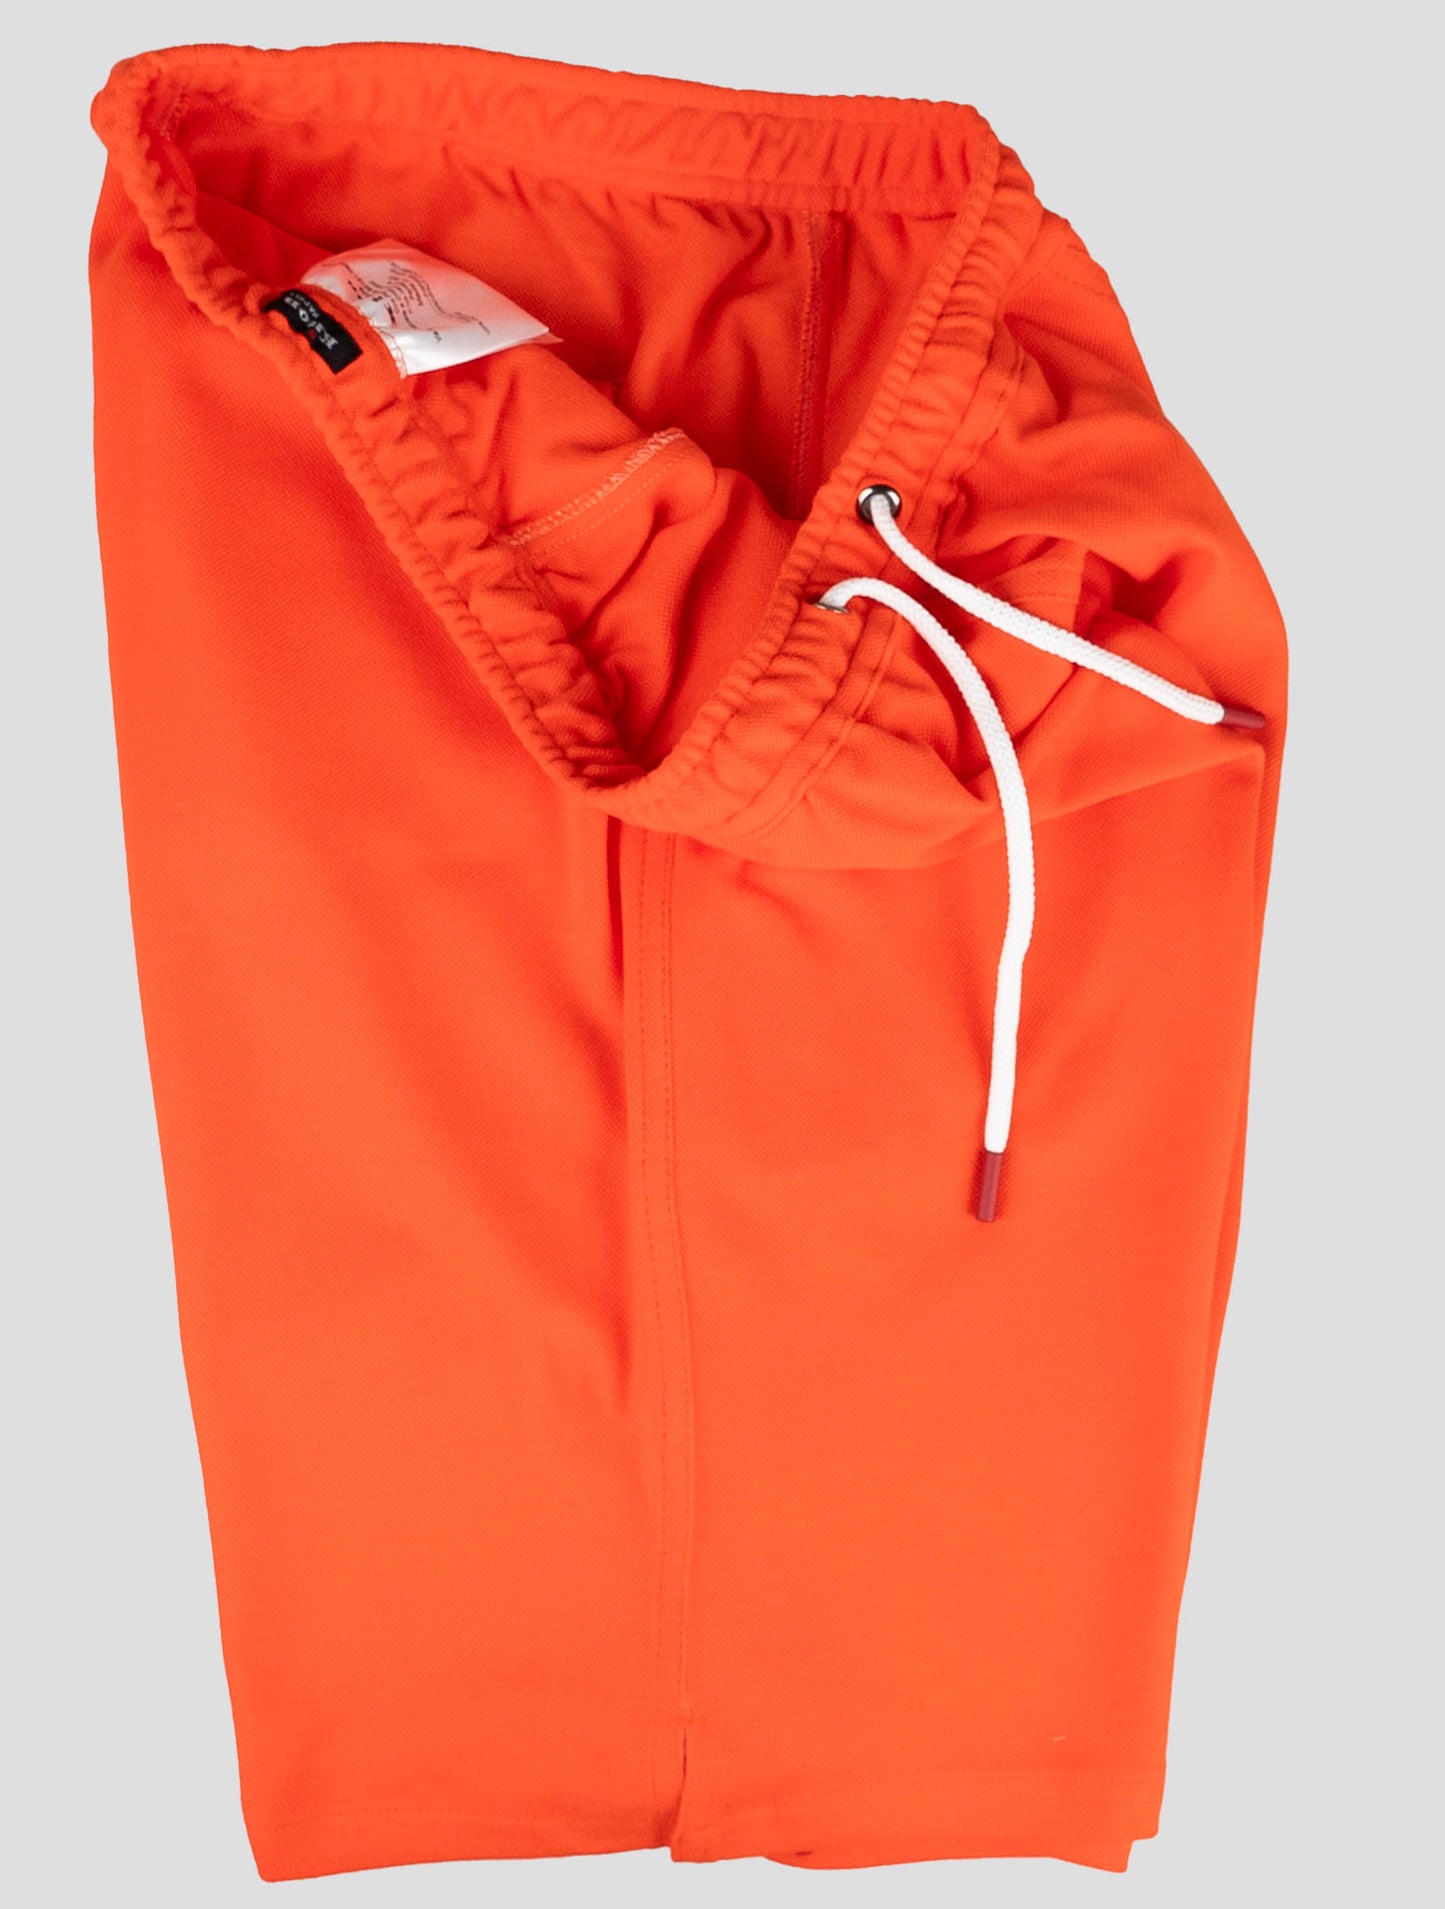 Kiton matchende outfit - Blå Mariano og Orange korte bukser træningsdragt